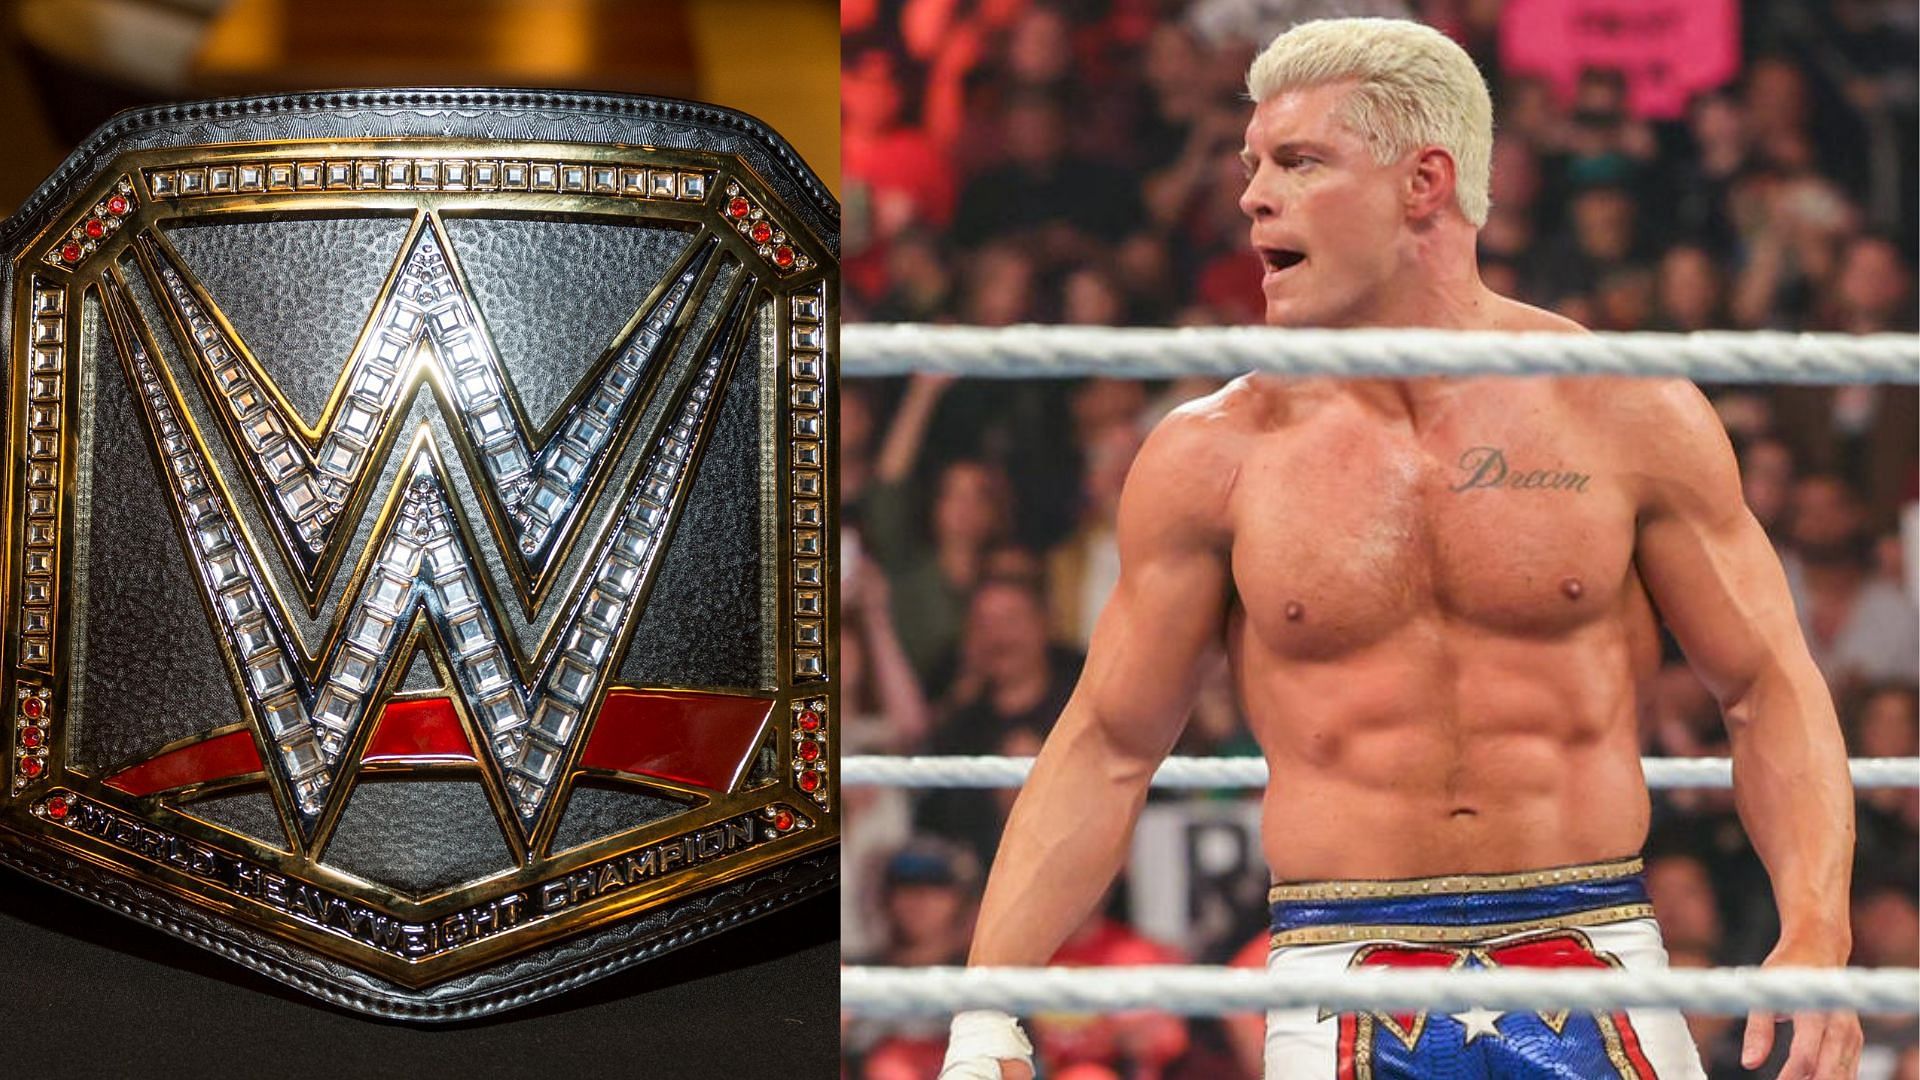 Cody Rhodes may win at WrestleMania 39.